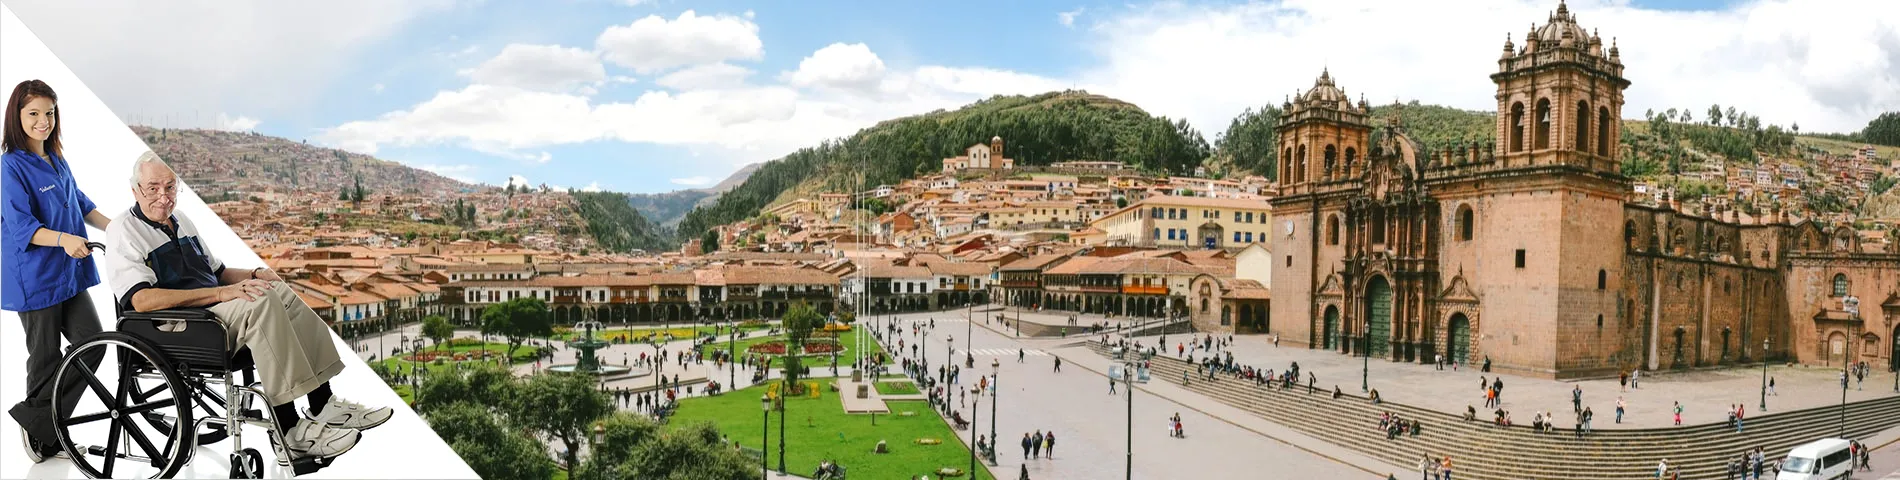 Cuzco - Spanska & voluntärarbete